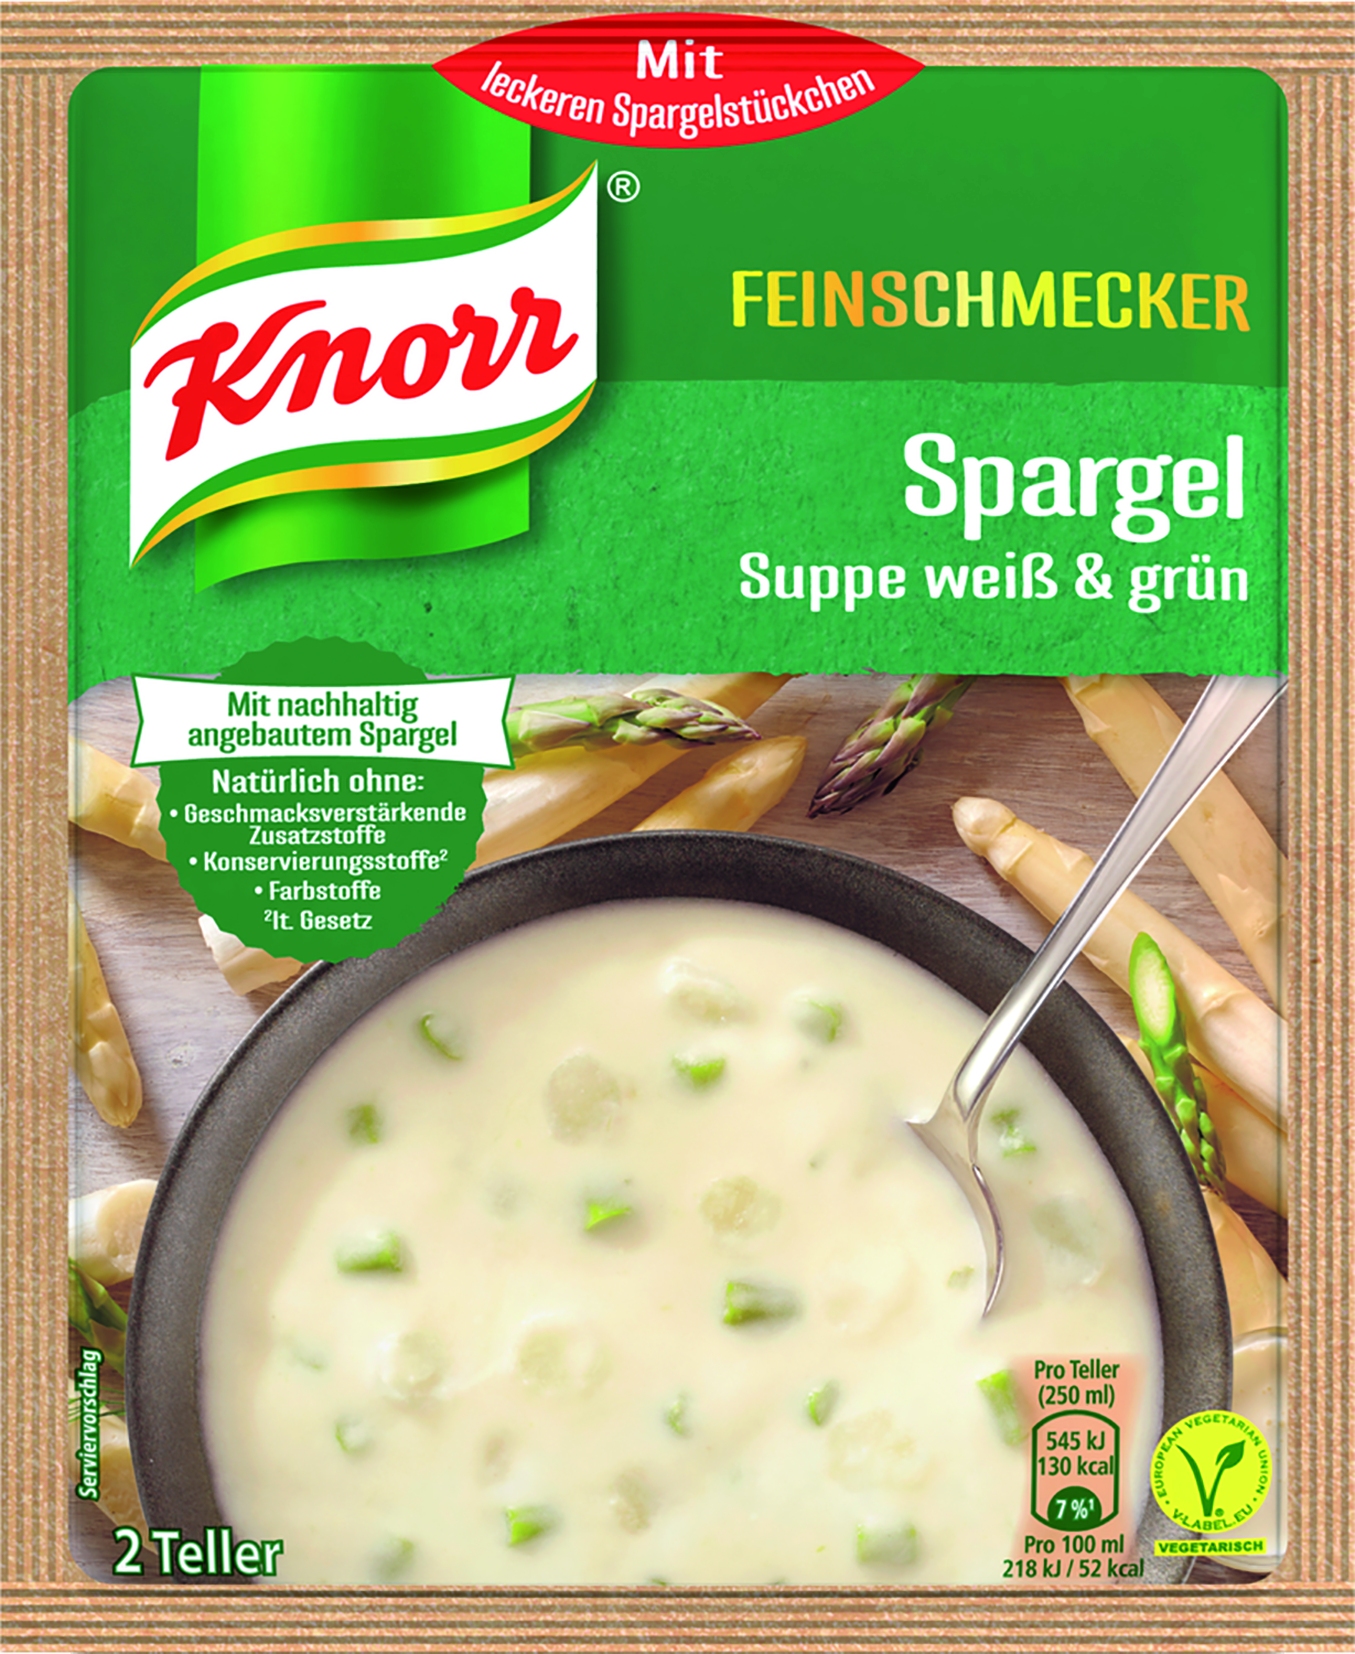 Powder for asparagus soup 20058246 17 | | Beutel